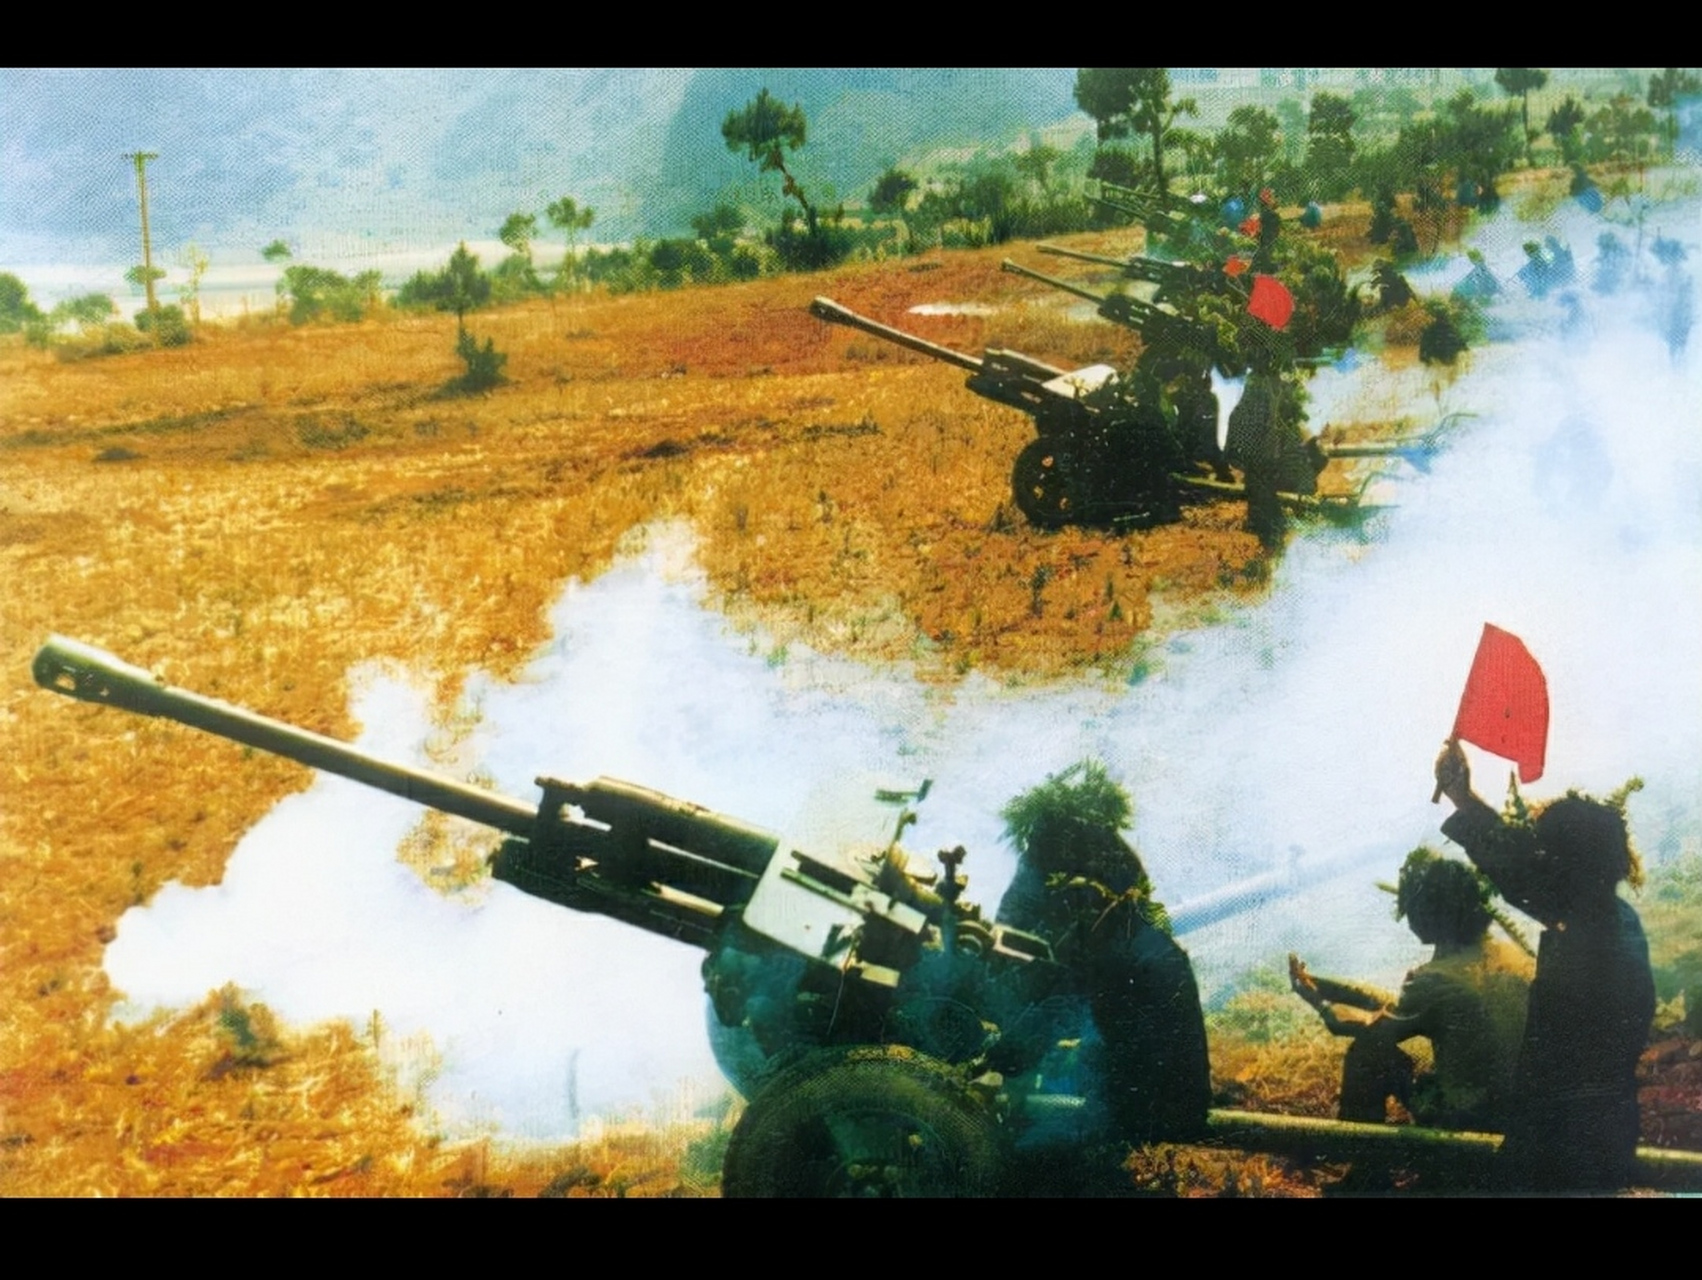 1979年2月17日,随着万炮齐发,对越自卫反击战正式拉开序幕